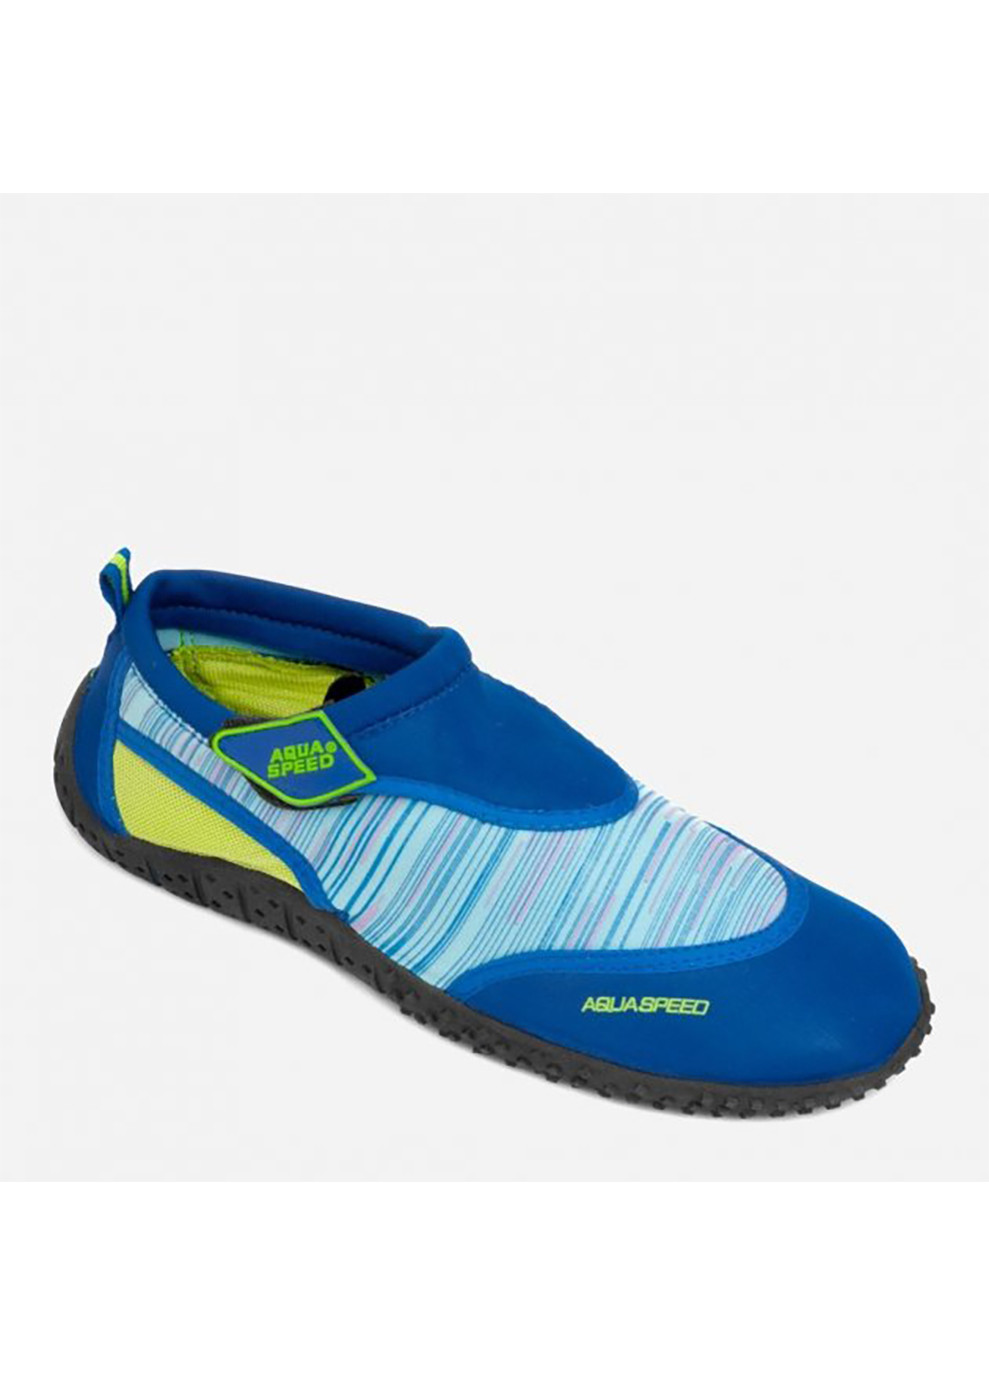 Синие спортивные аквашузы aqua shoe model 2c 6578 синий, голубой, жёлтый Aqua Speed